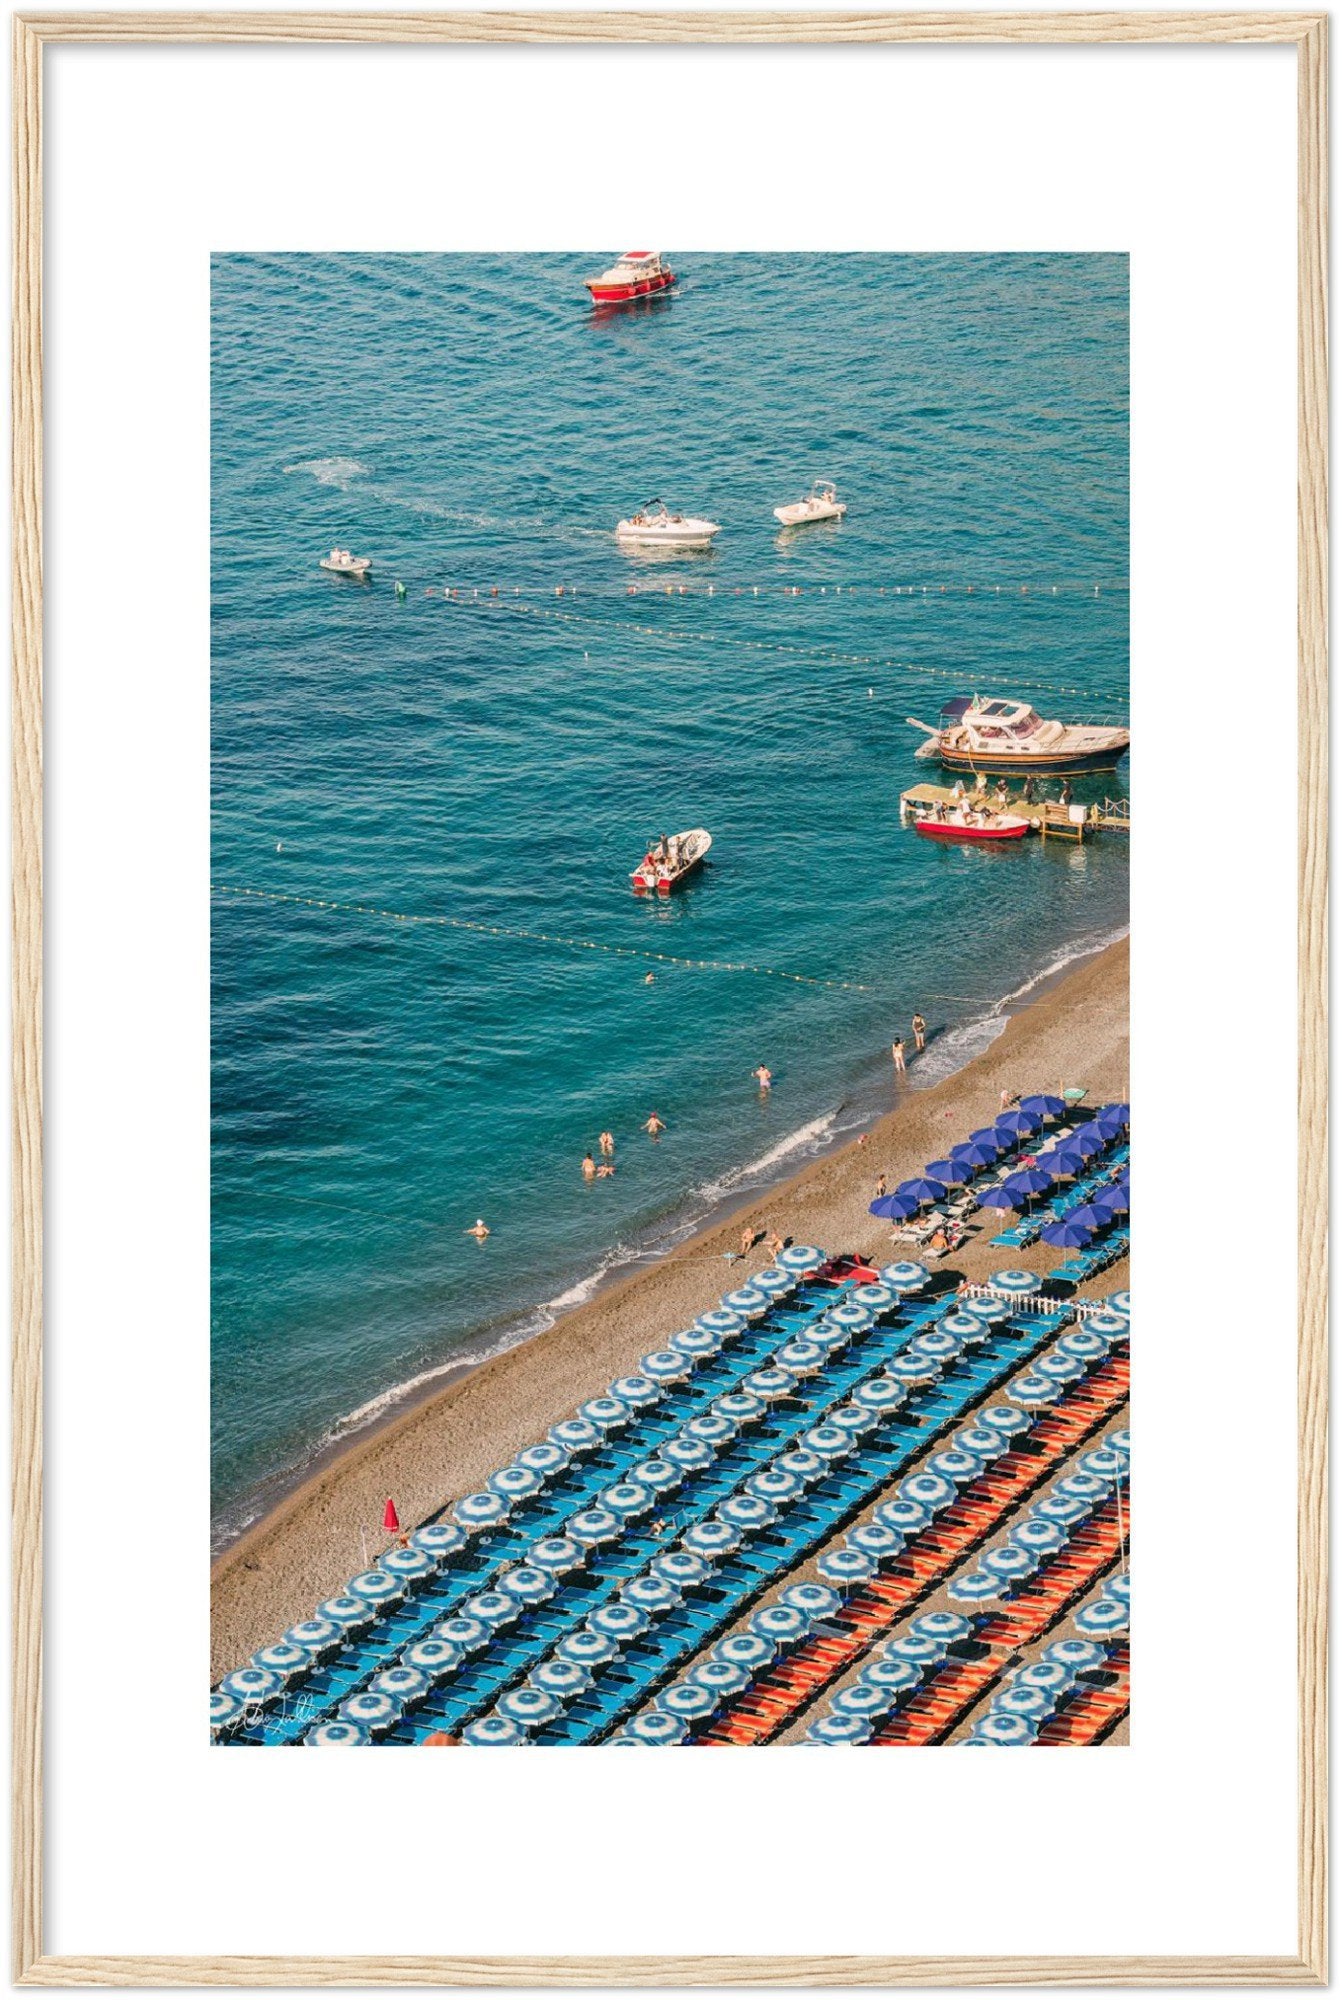 "Umbrellas" Positano - Wooden Framed Print